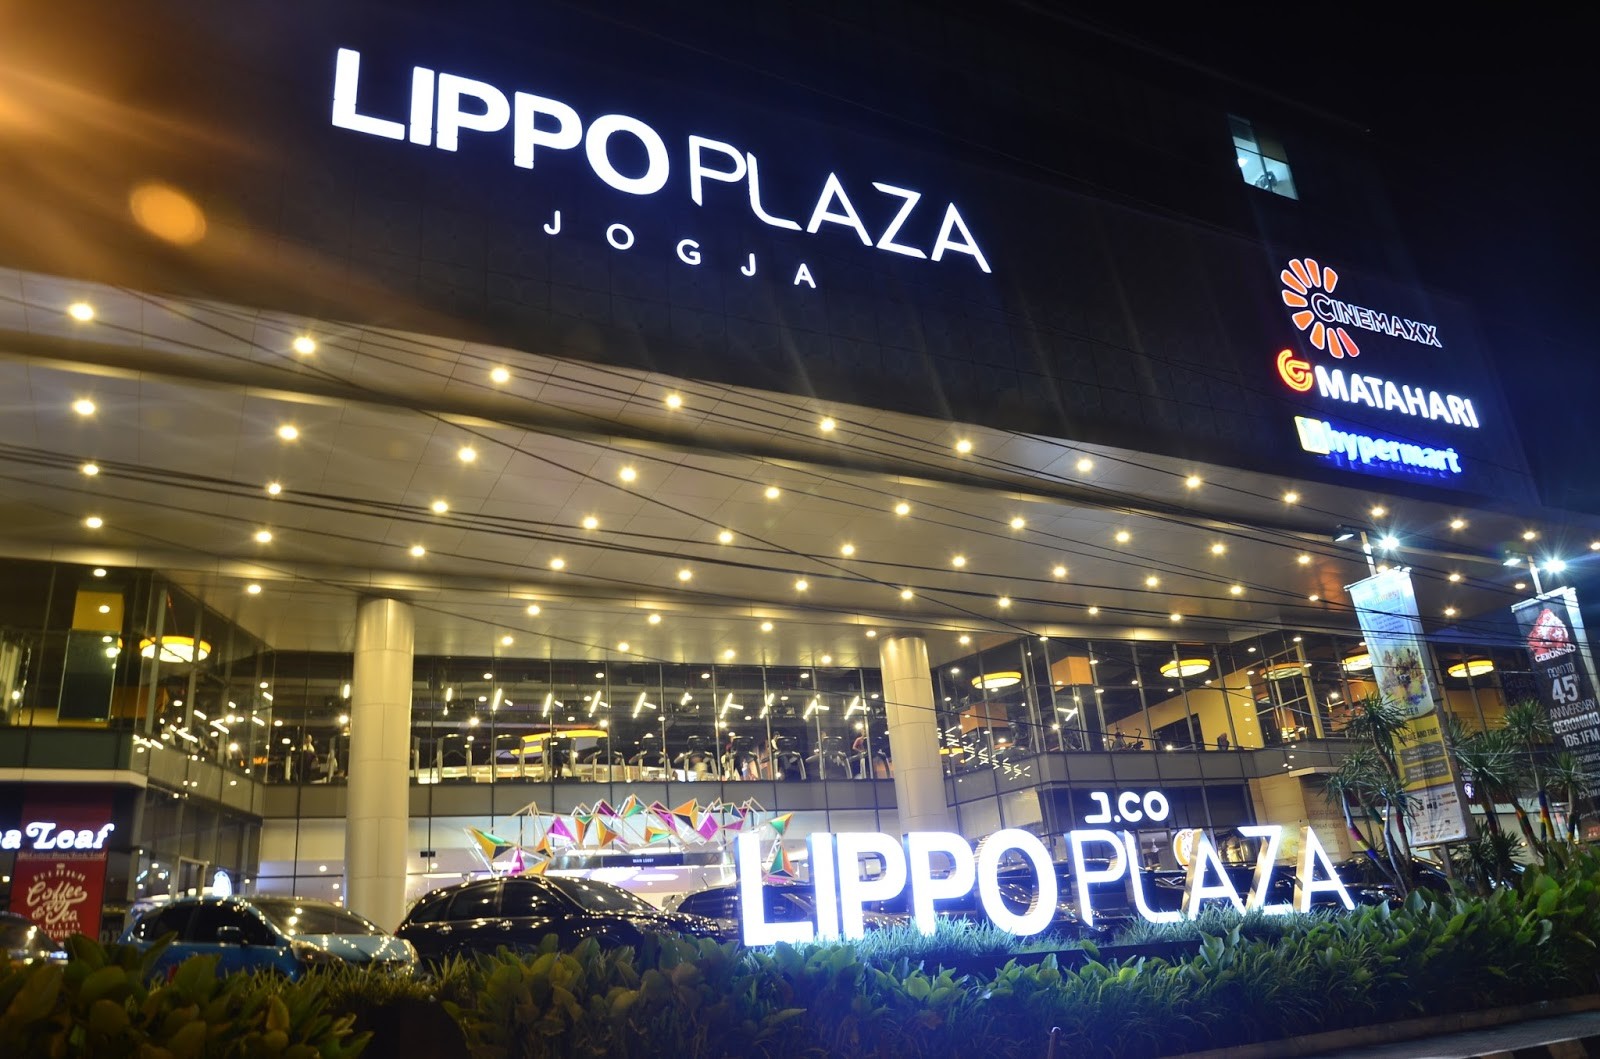 Lippo Plaza Jogja 